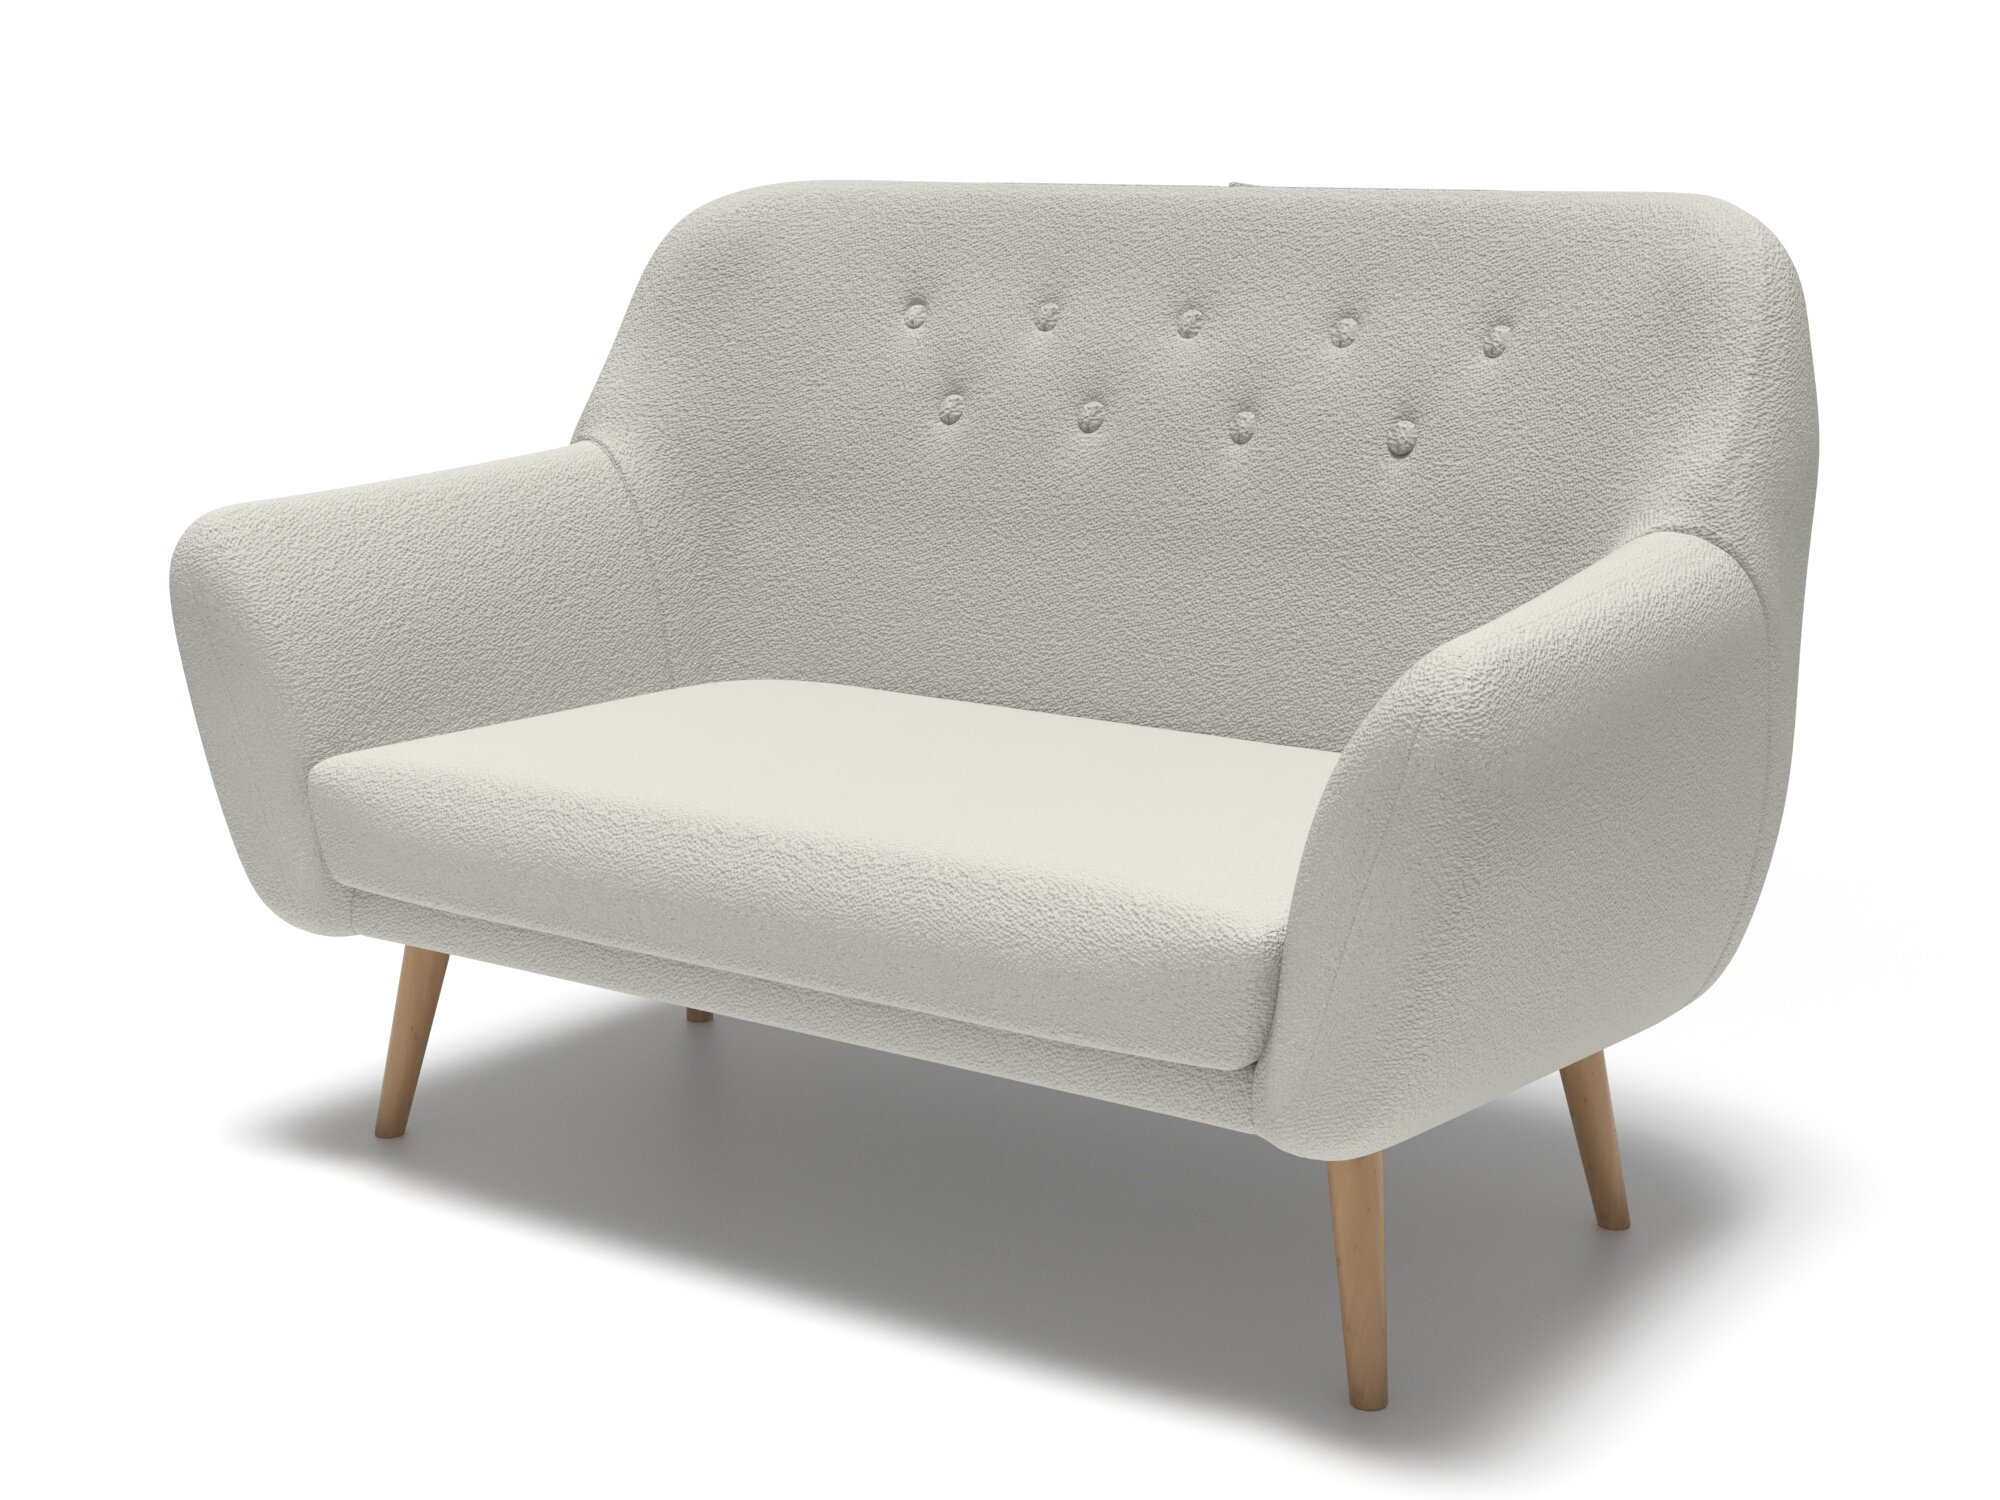 Мини диван Soft Element Мобидик White, двухместный, букле, деревянные ножки, стиль скандинавский лофт, офисный, на дачу, для кафе и ресторанов